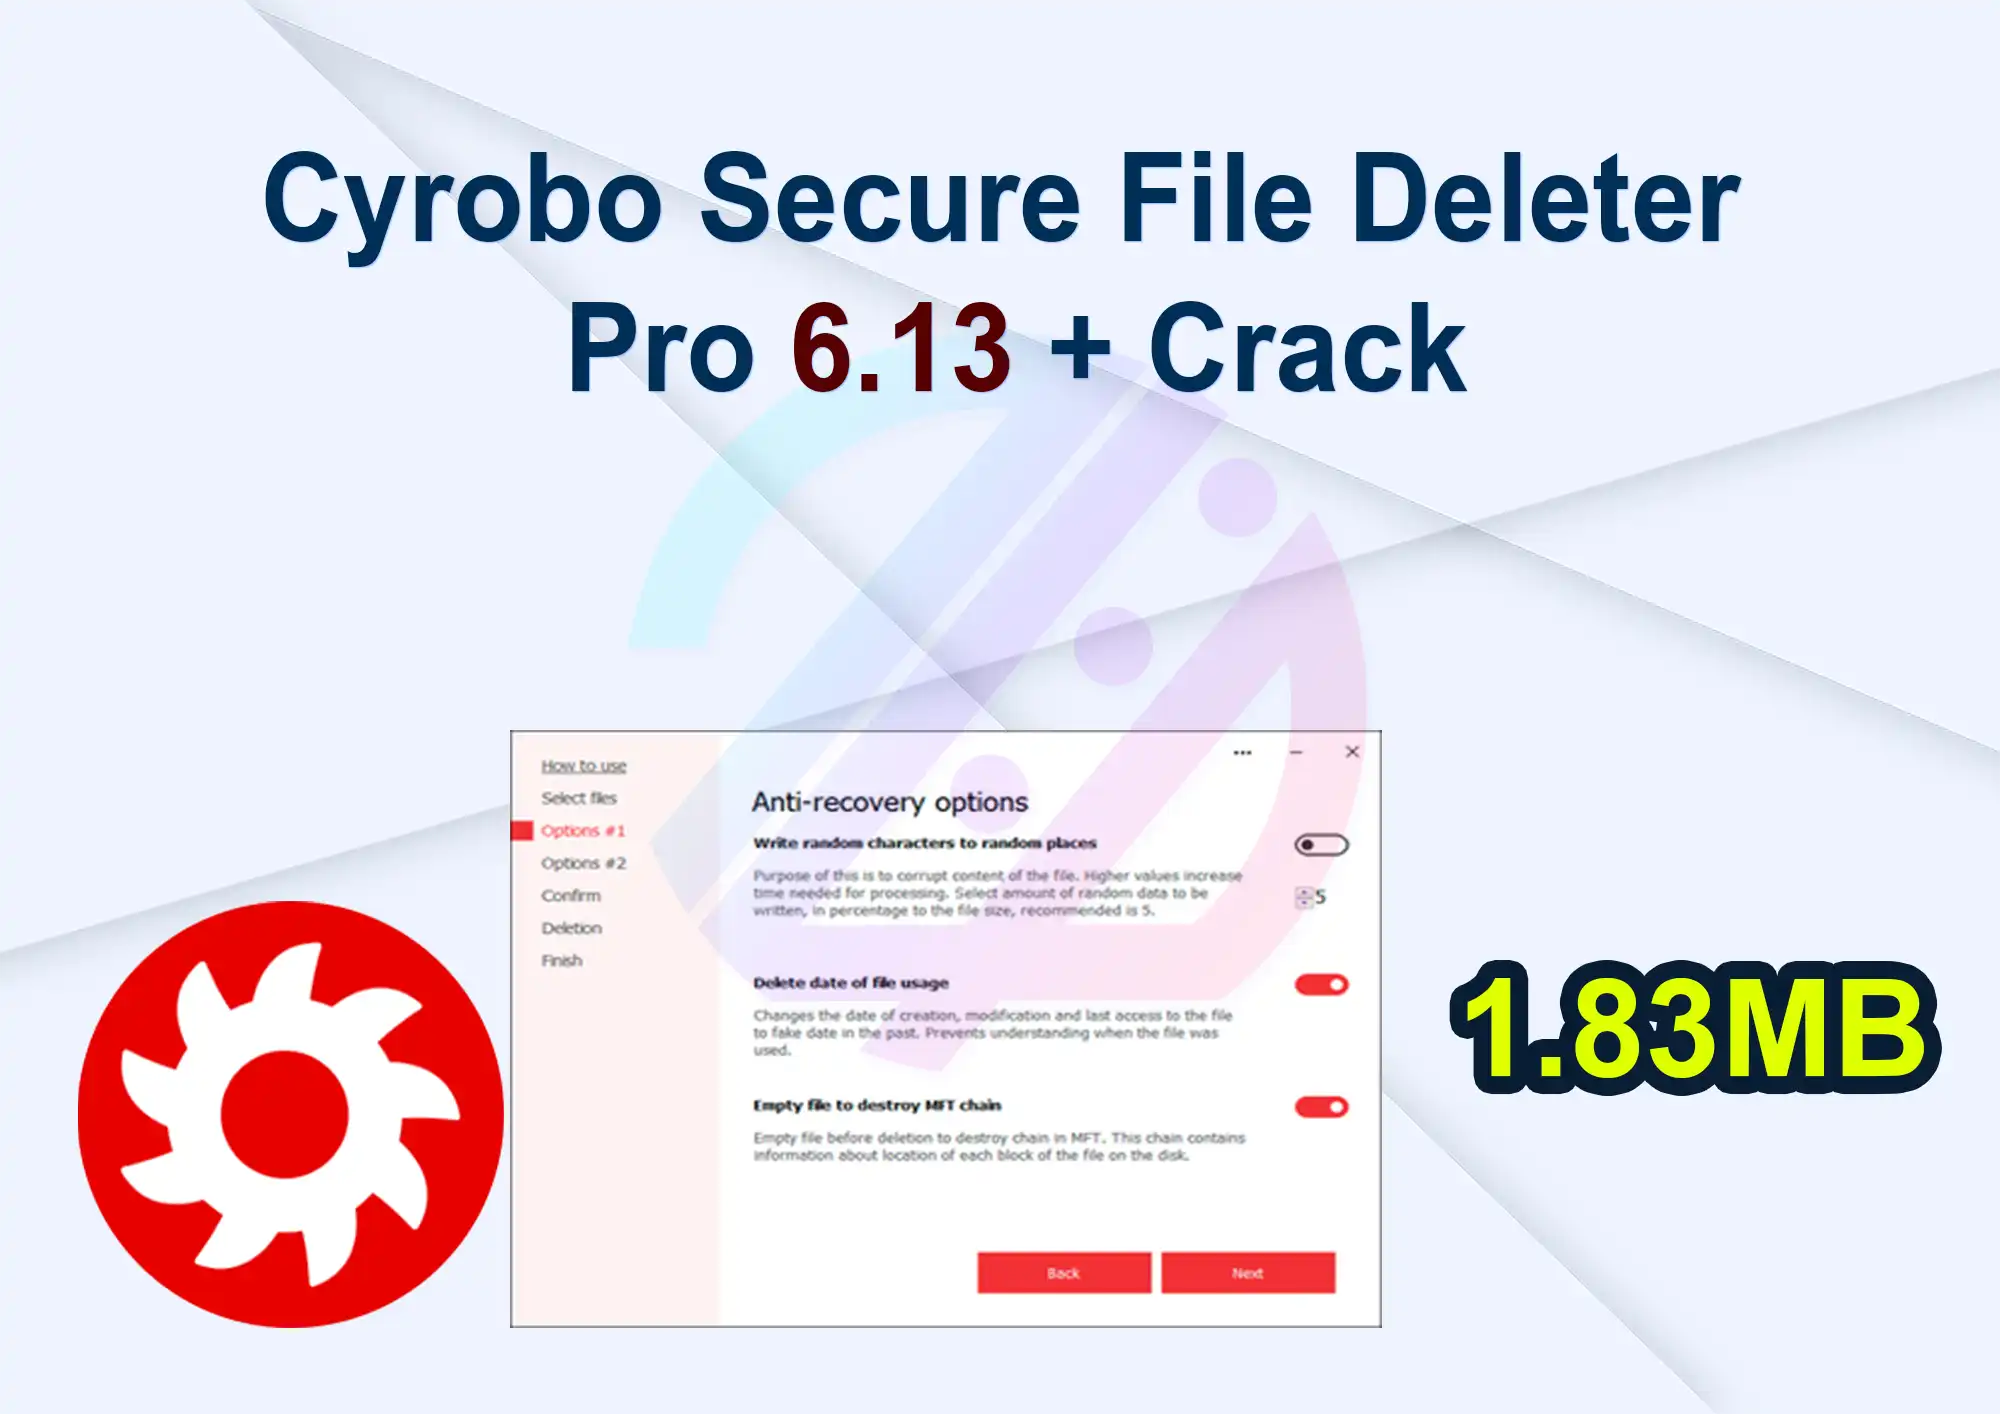 Cyrobo Secure File Deleter Pro 6.13 + Crack